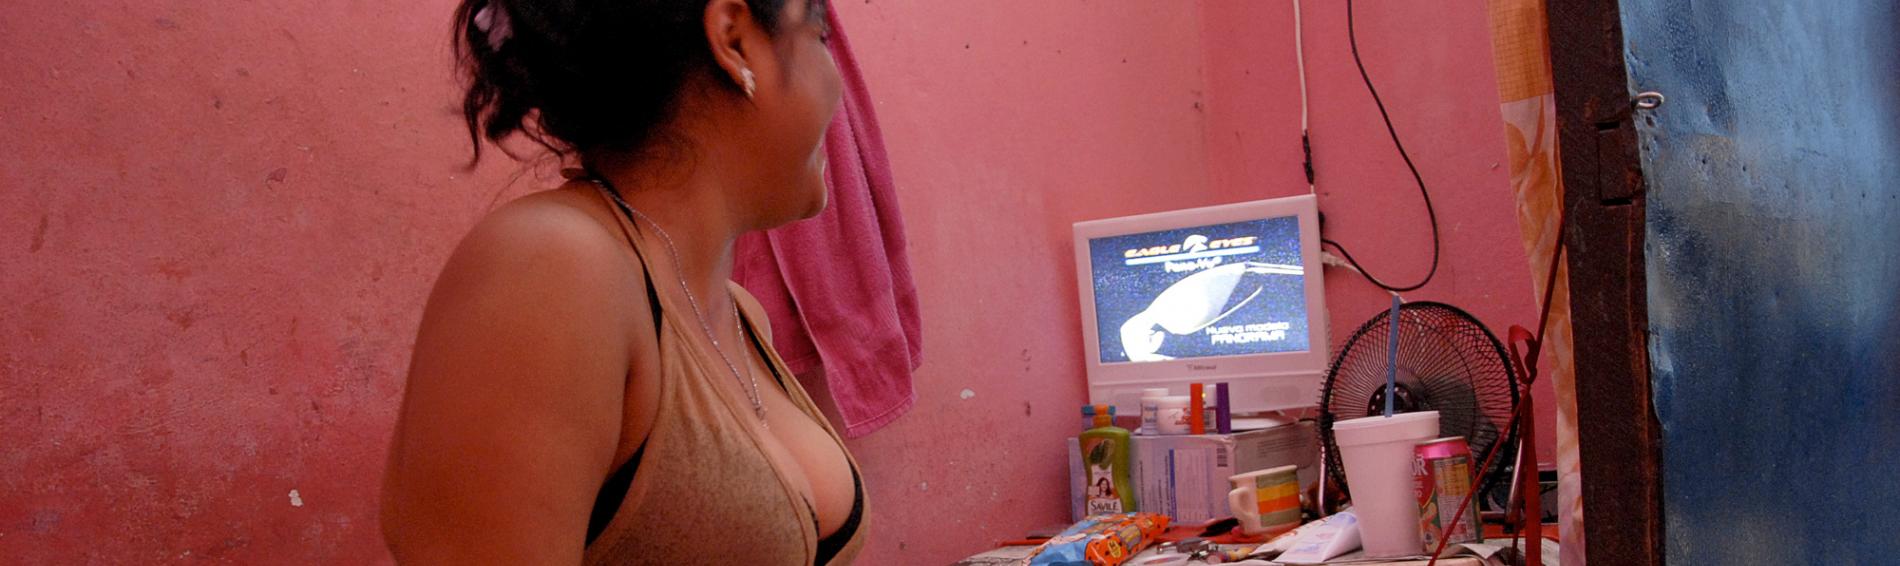 Viele Frauen in Mexiko leben von Prostitution. Foto:Michel Redondo